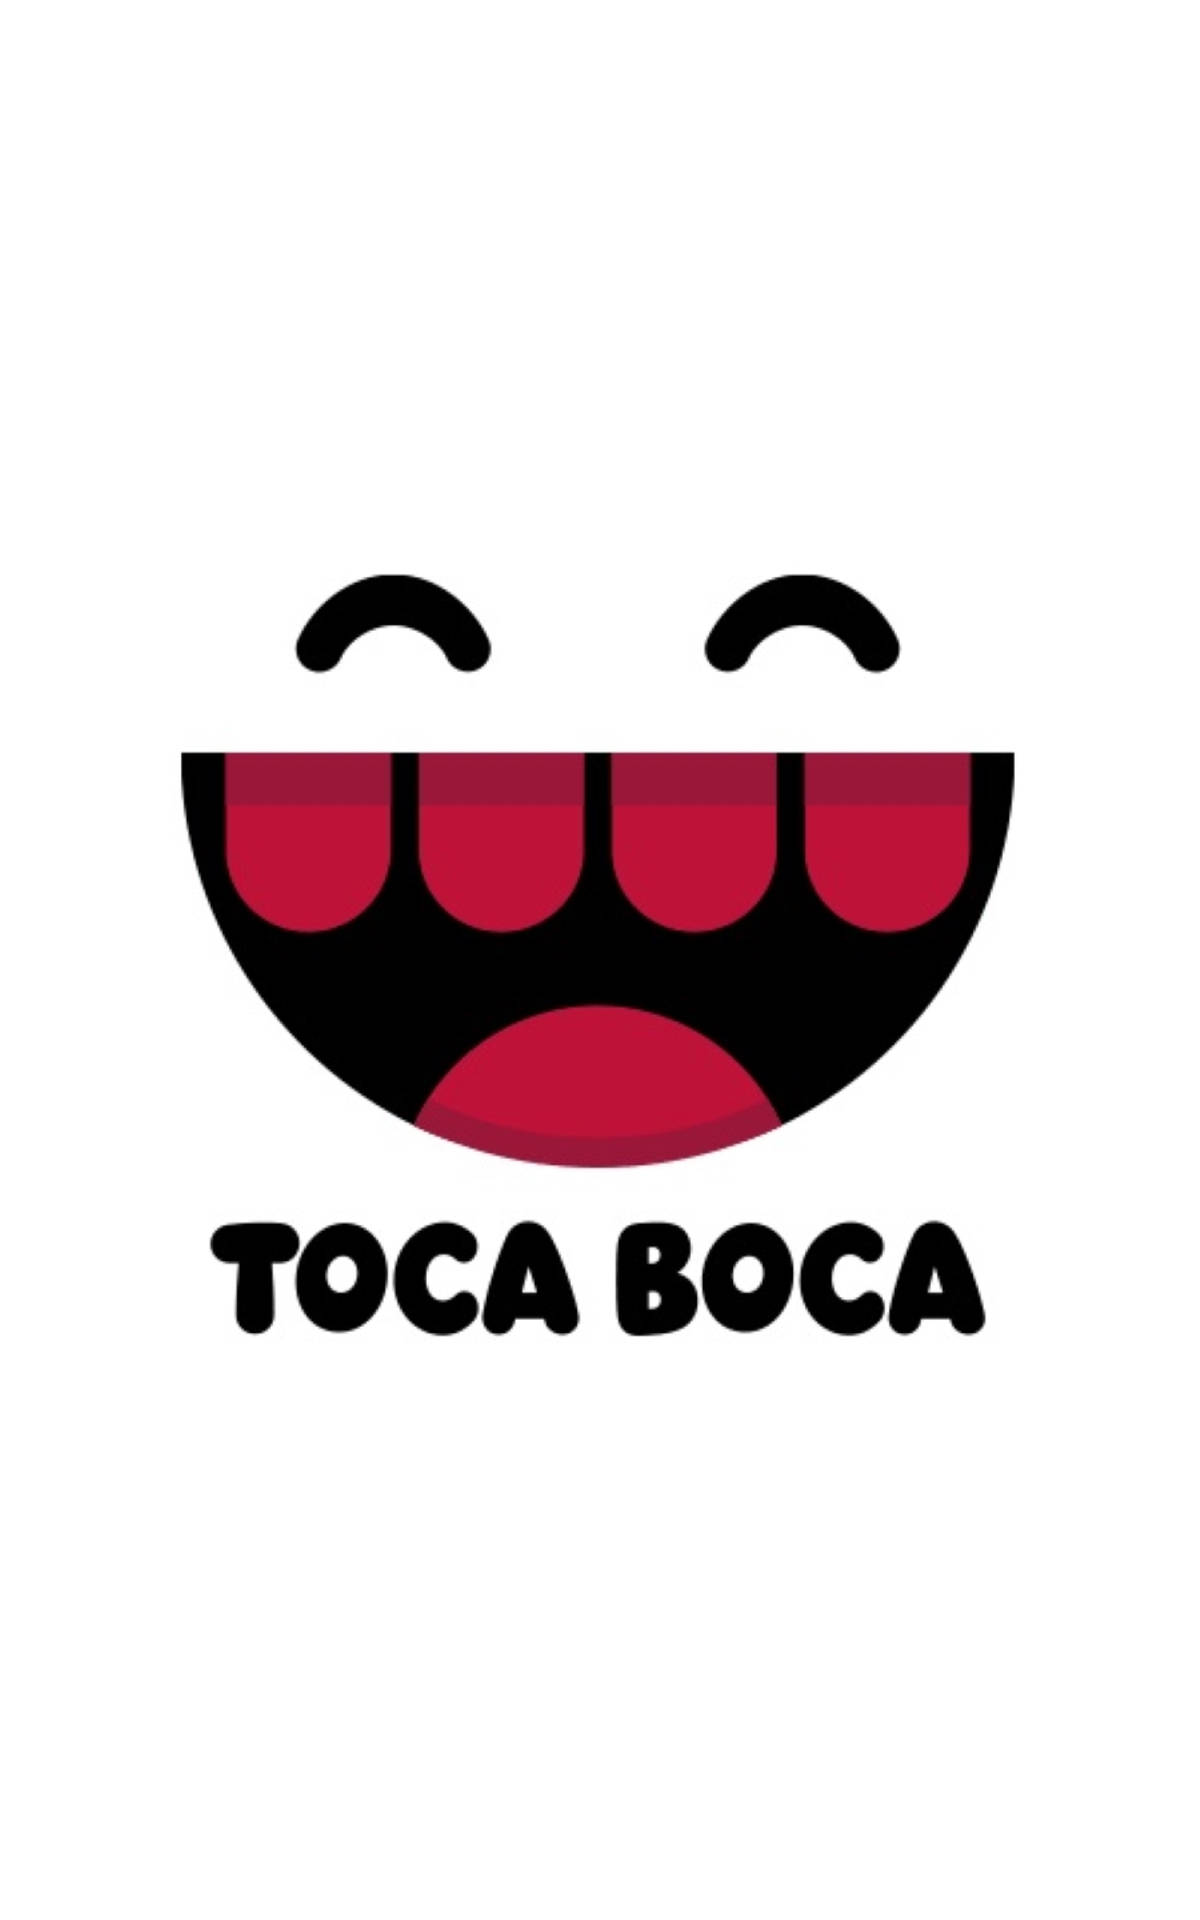 Toca Boca Logo Background